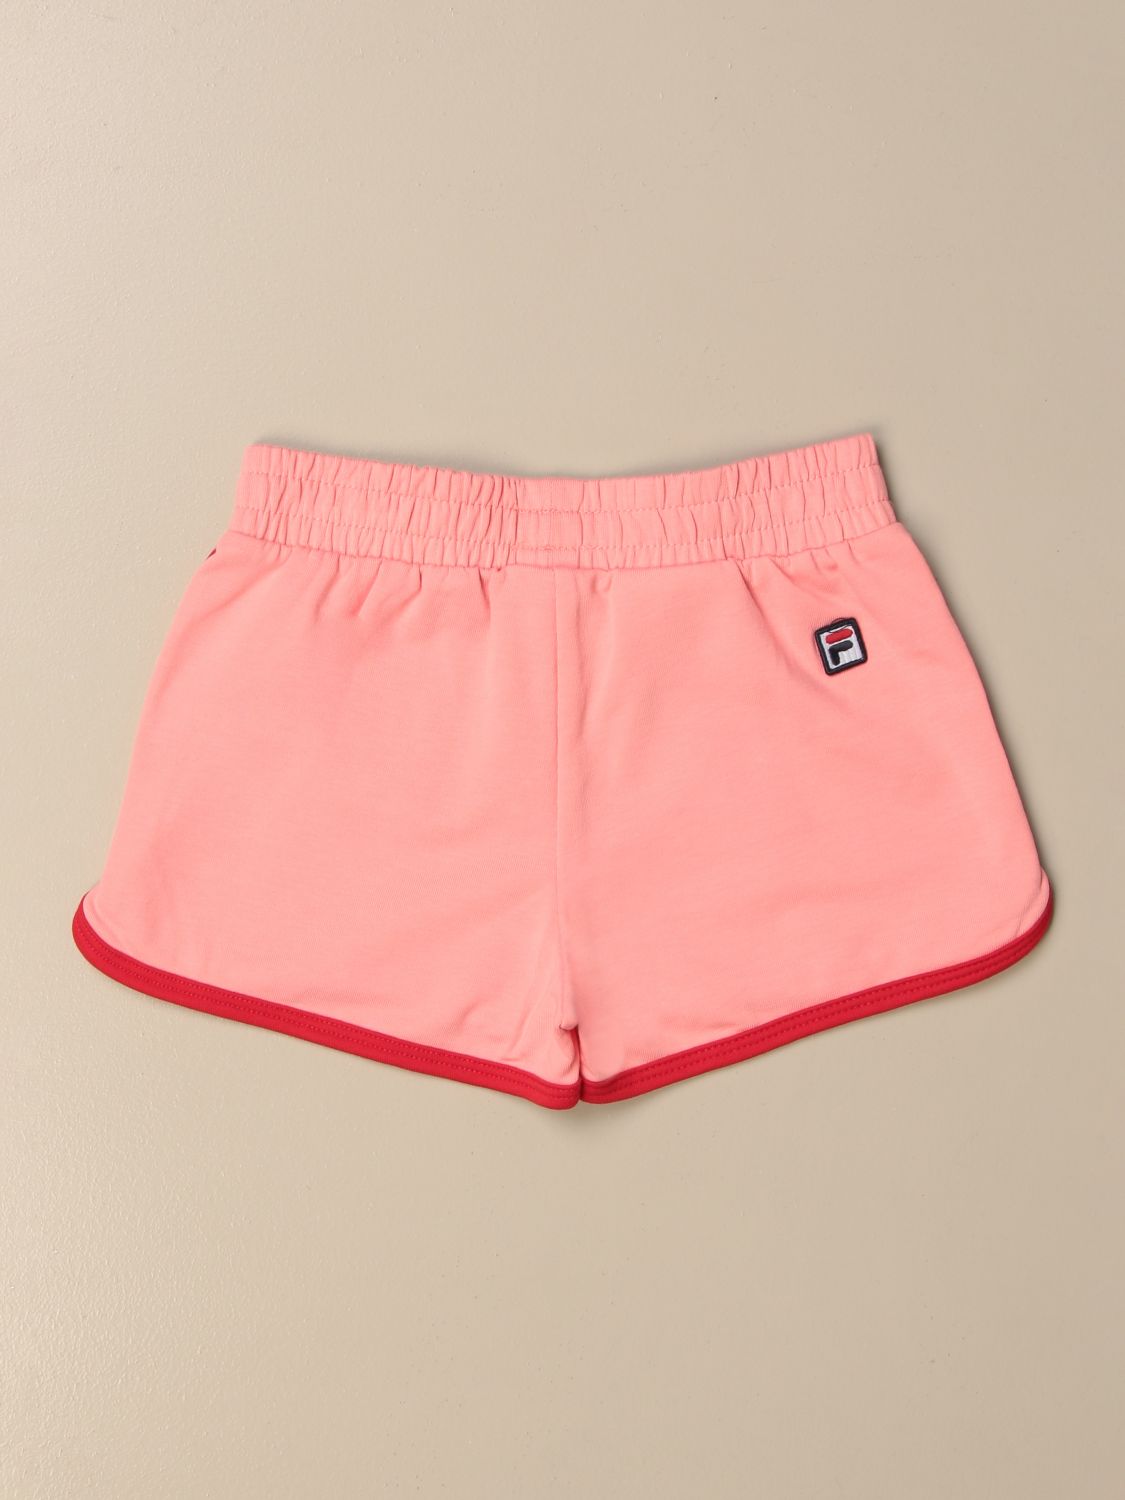 Pantalones cortos para Coral | Pantalones Cortos Fila 688628 en en GIGLIO.COM